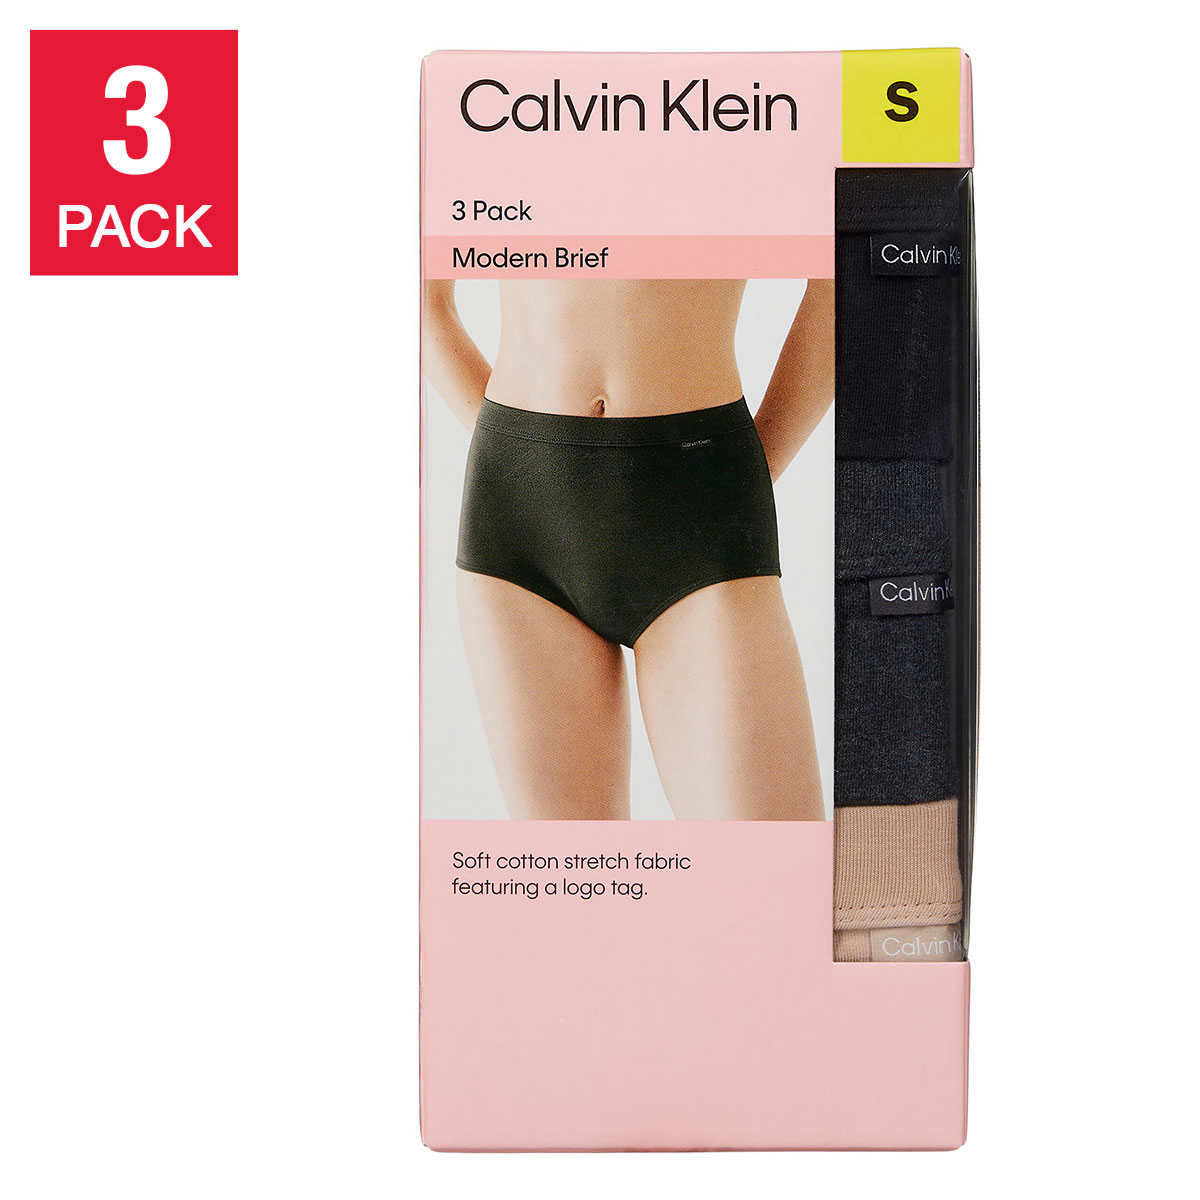 Calvin Klein, Matching Sets, Girls 3 Piece Calvin Klein Set